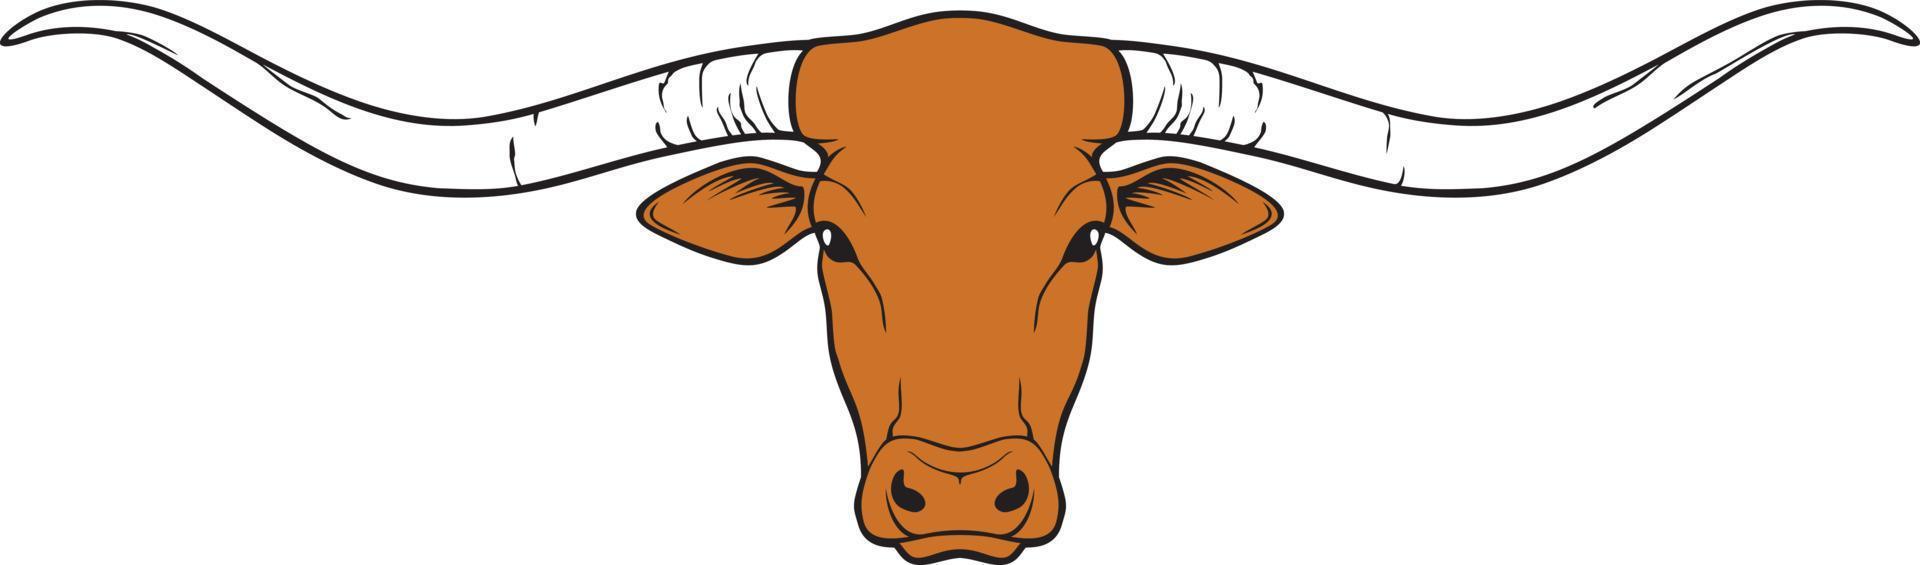 Longhorn-Kopf - Texas-Design, Stier-Symbol. Vektor-Illustration. vektor